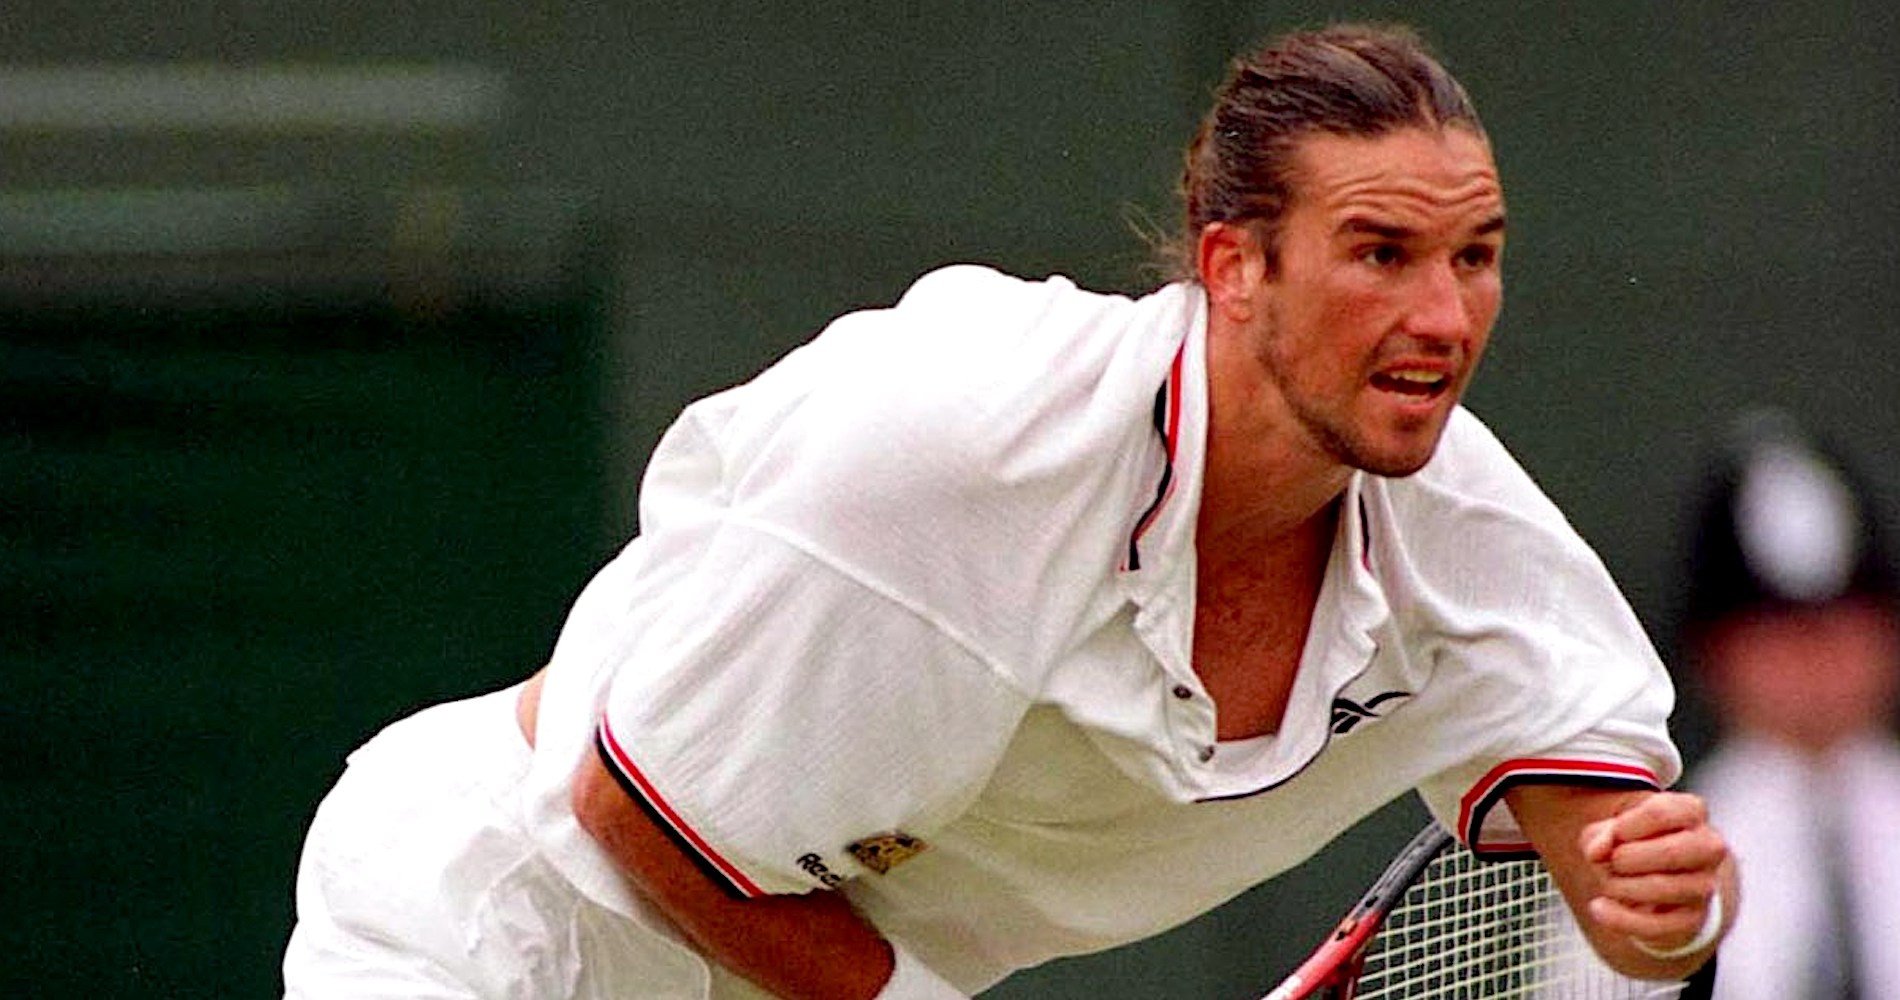 Patrick Rafter, Wimbledon 1998